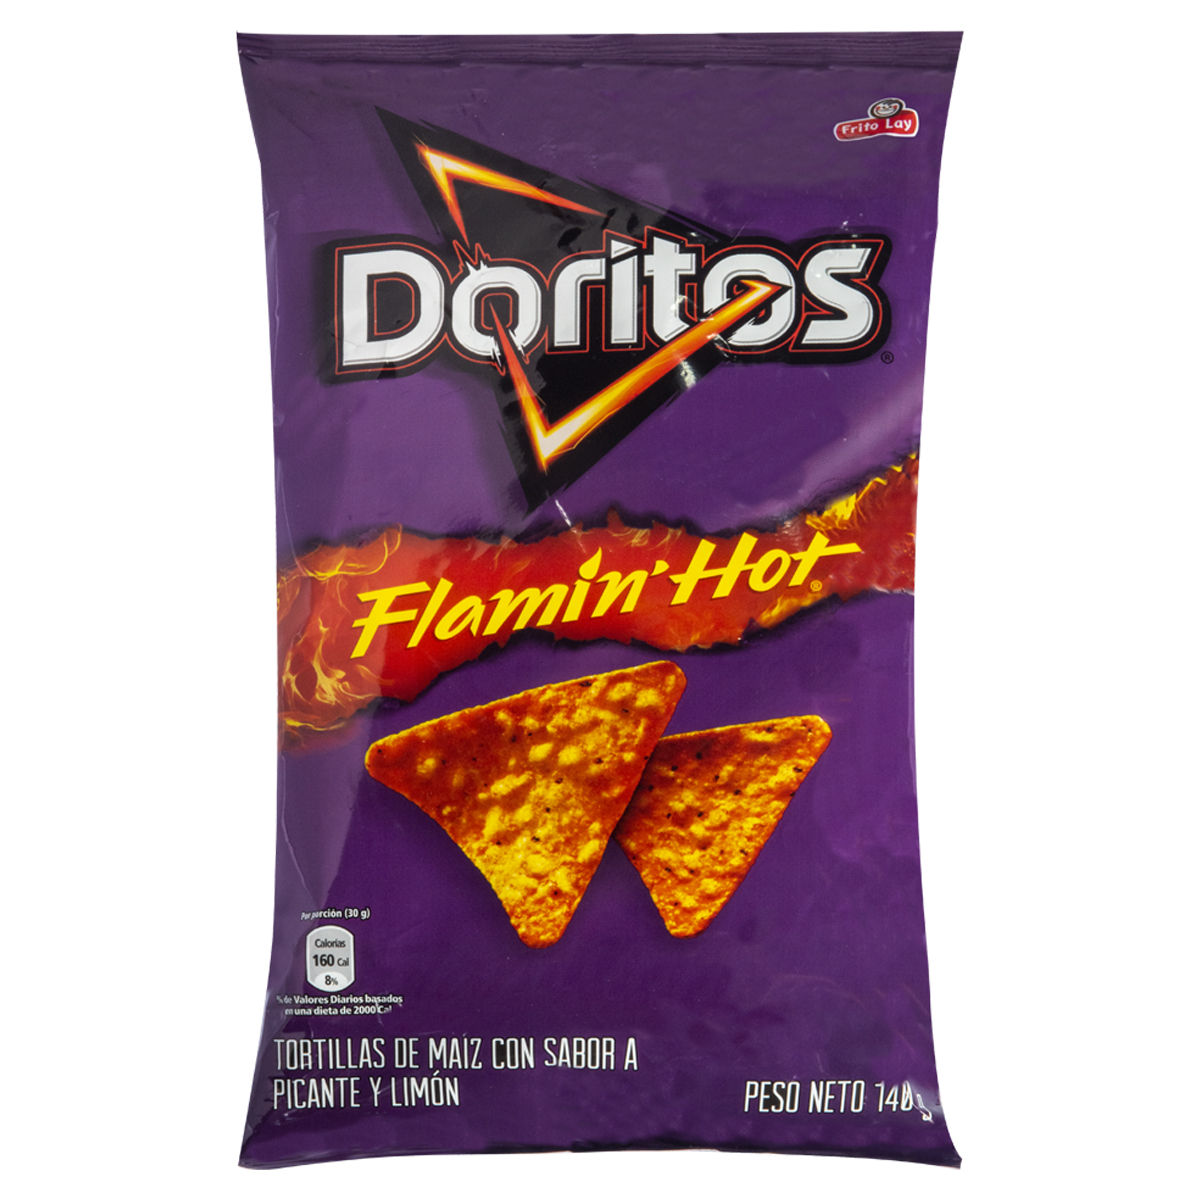 Doritos Flaming Hot G